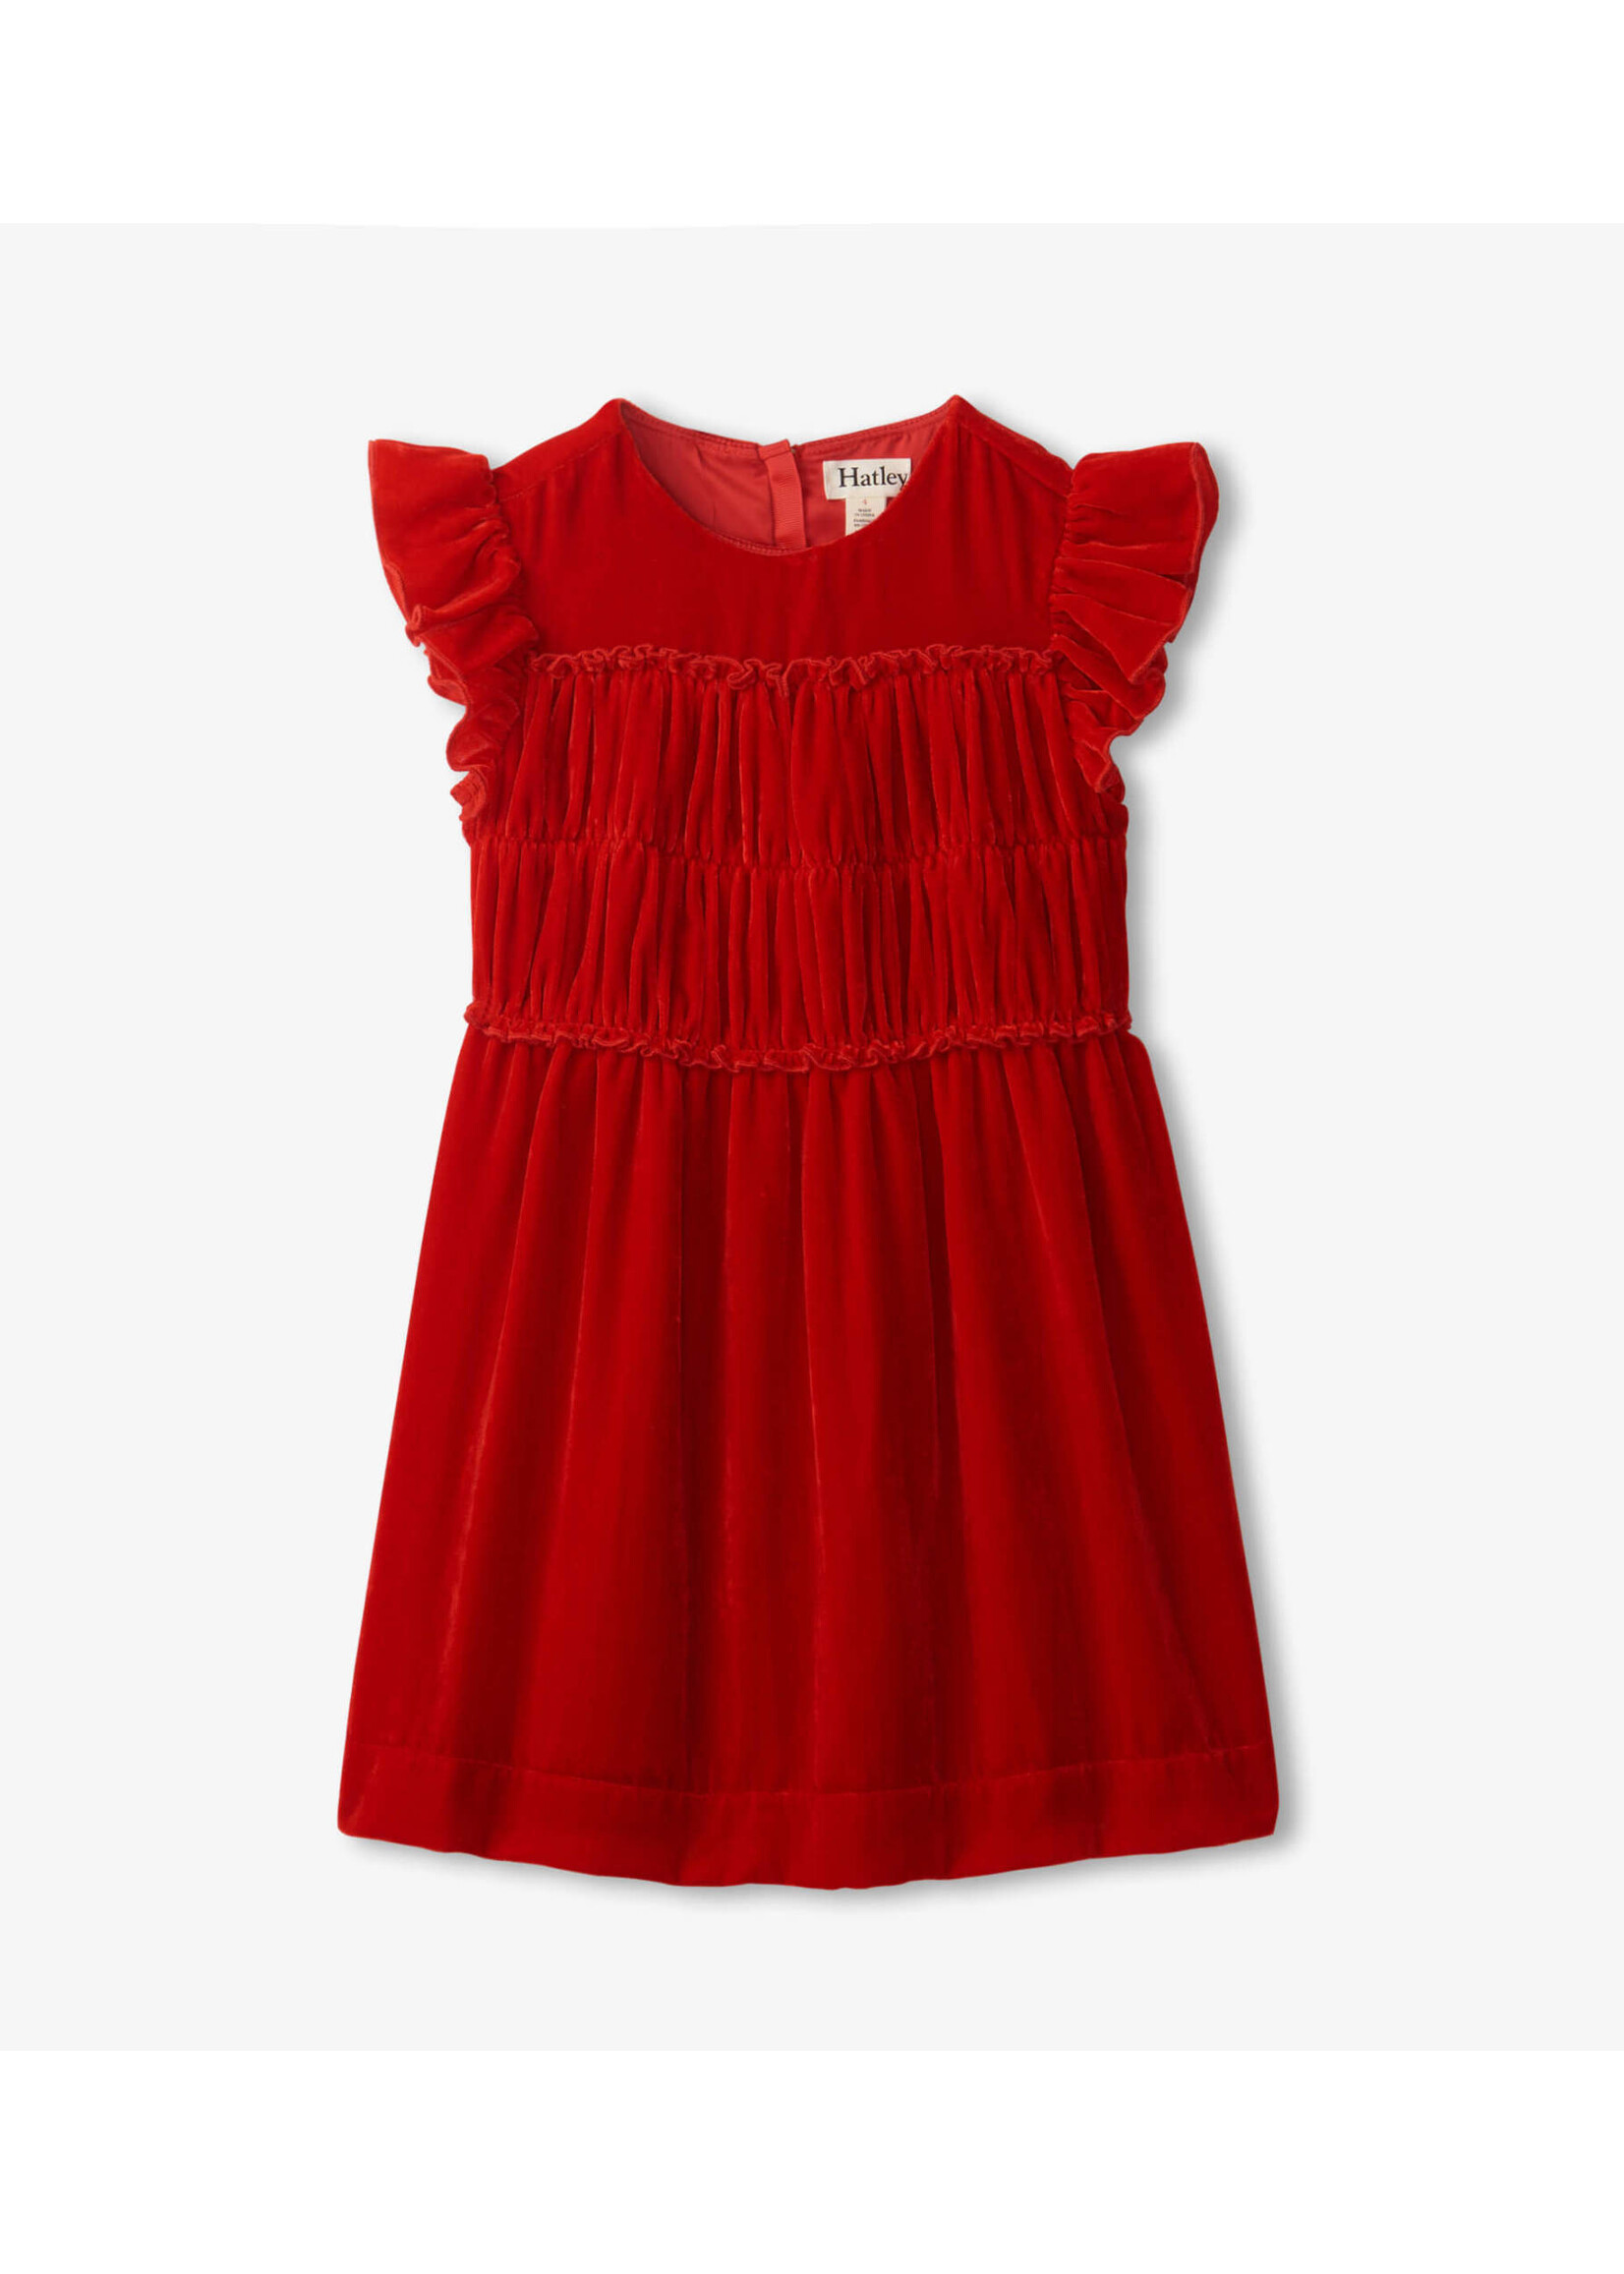 Hatley Hatley Red Velvet Dress